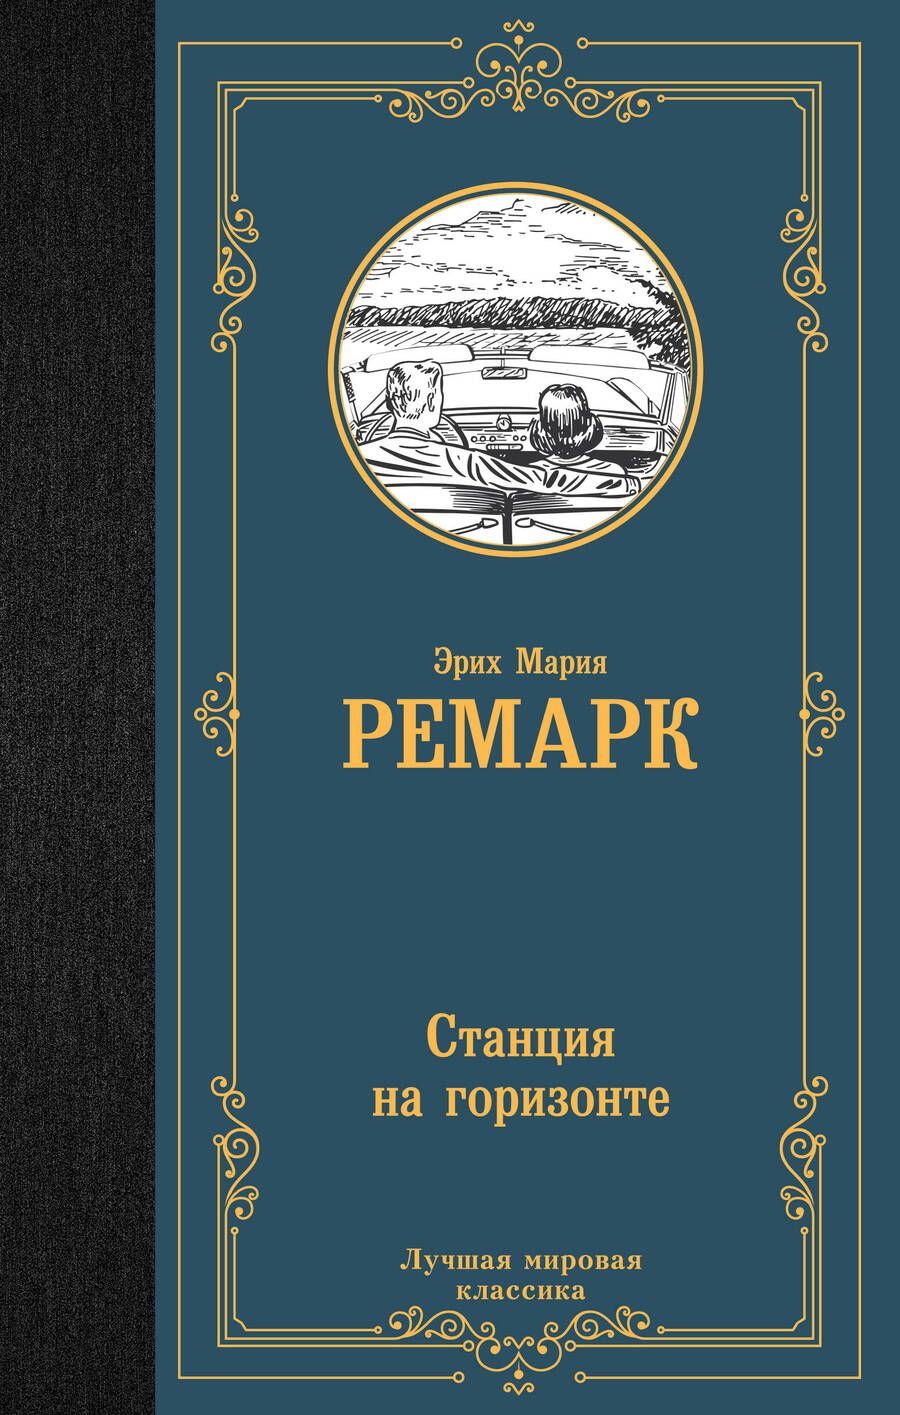 Обложка книги "Ремарк: Станция на горизонте"